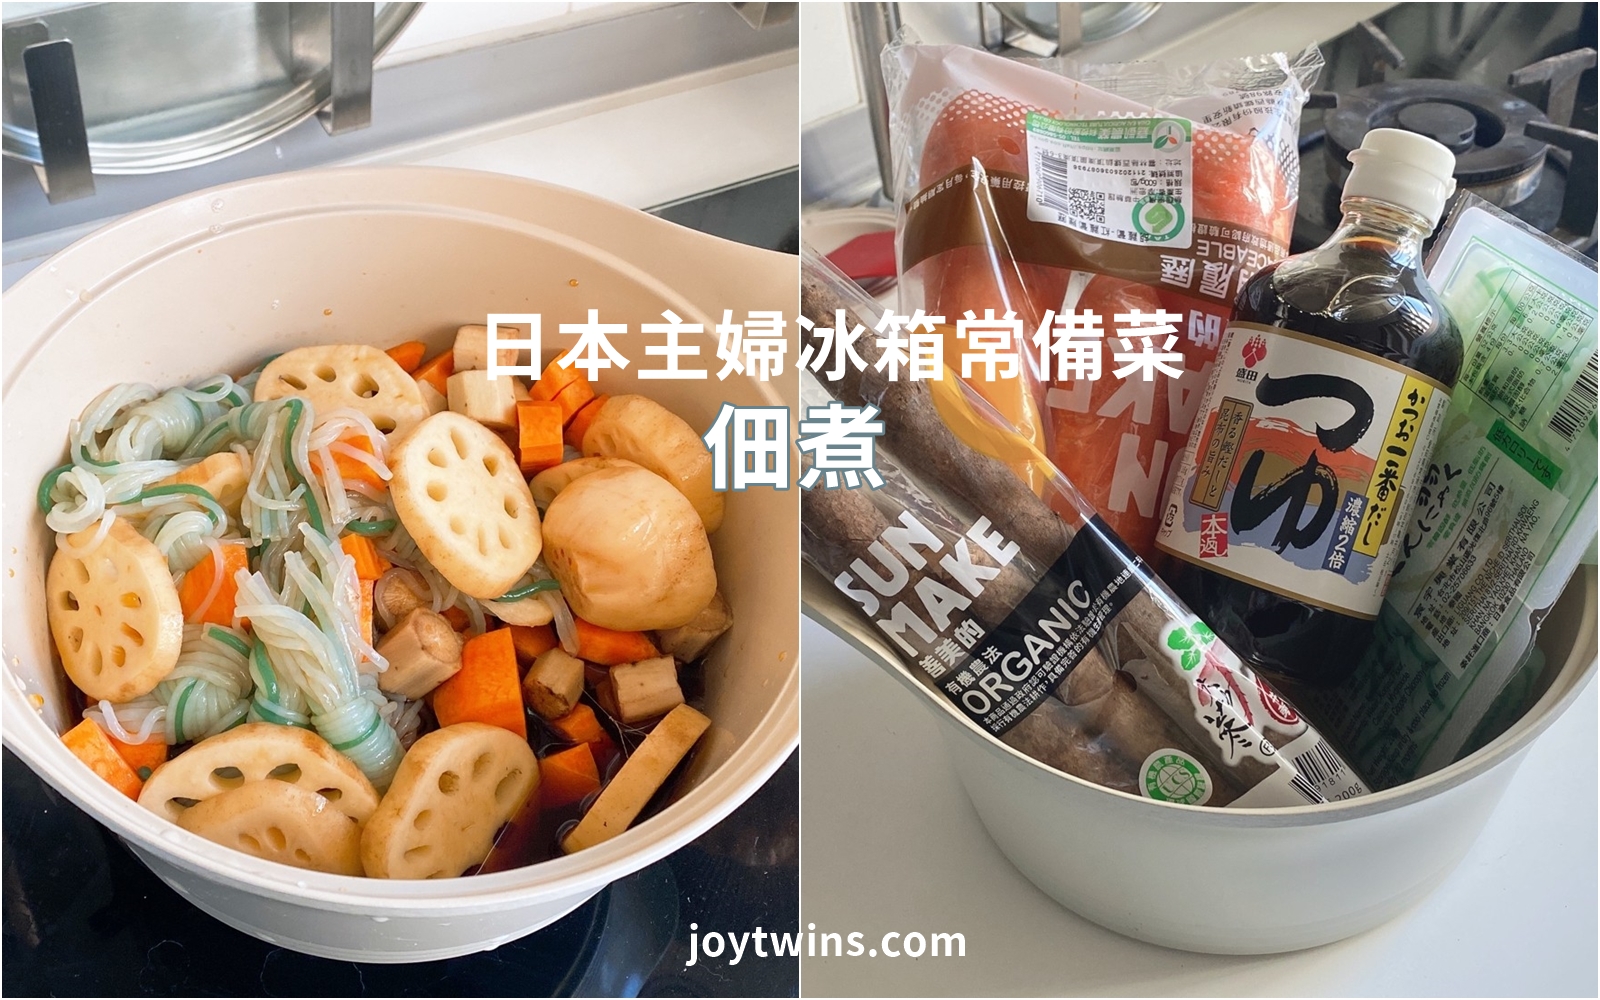 【超市食譜】佃煮 一次上手! 日本主婦都會做的冰箱常備菜